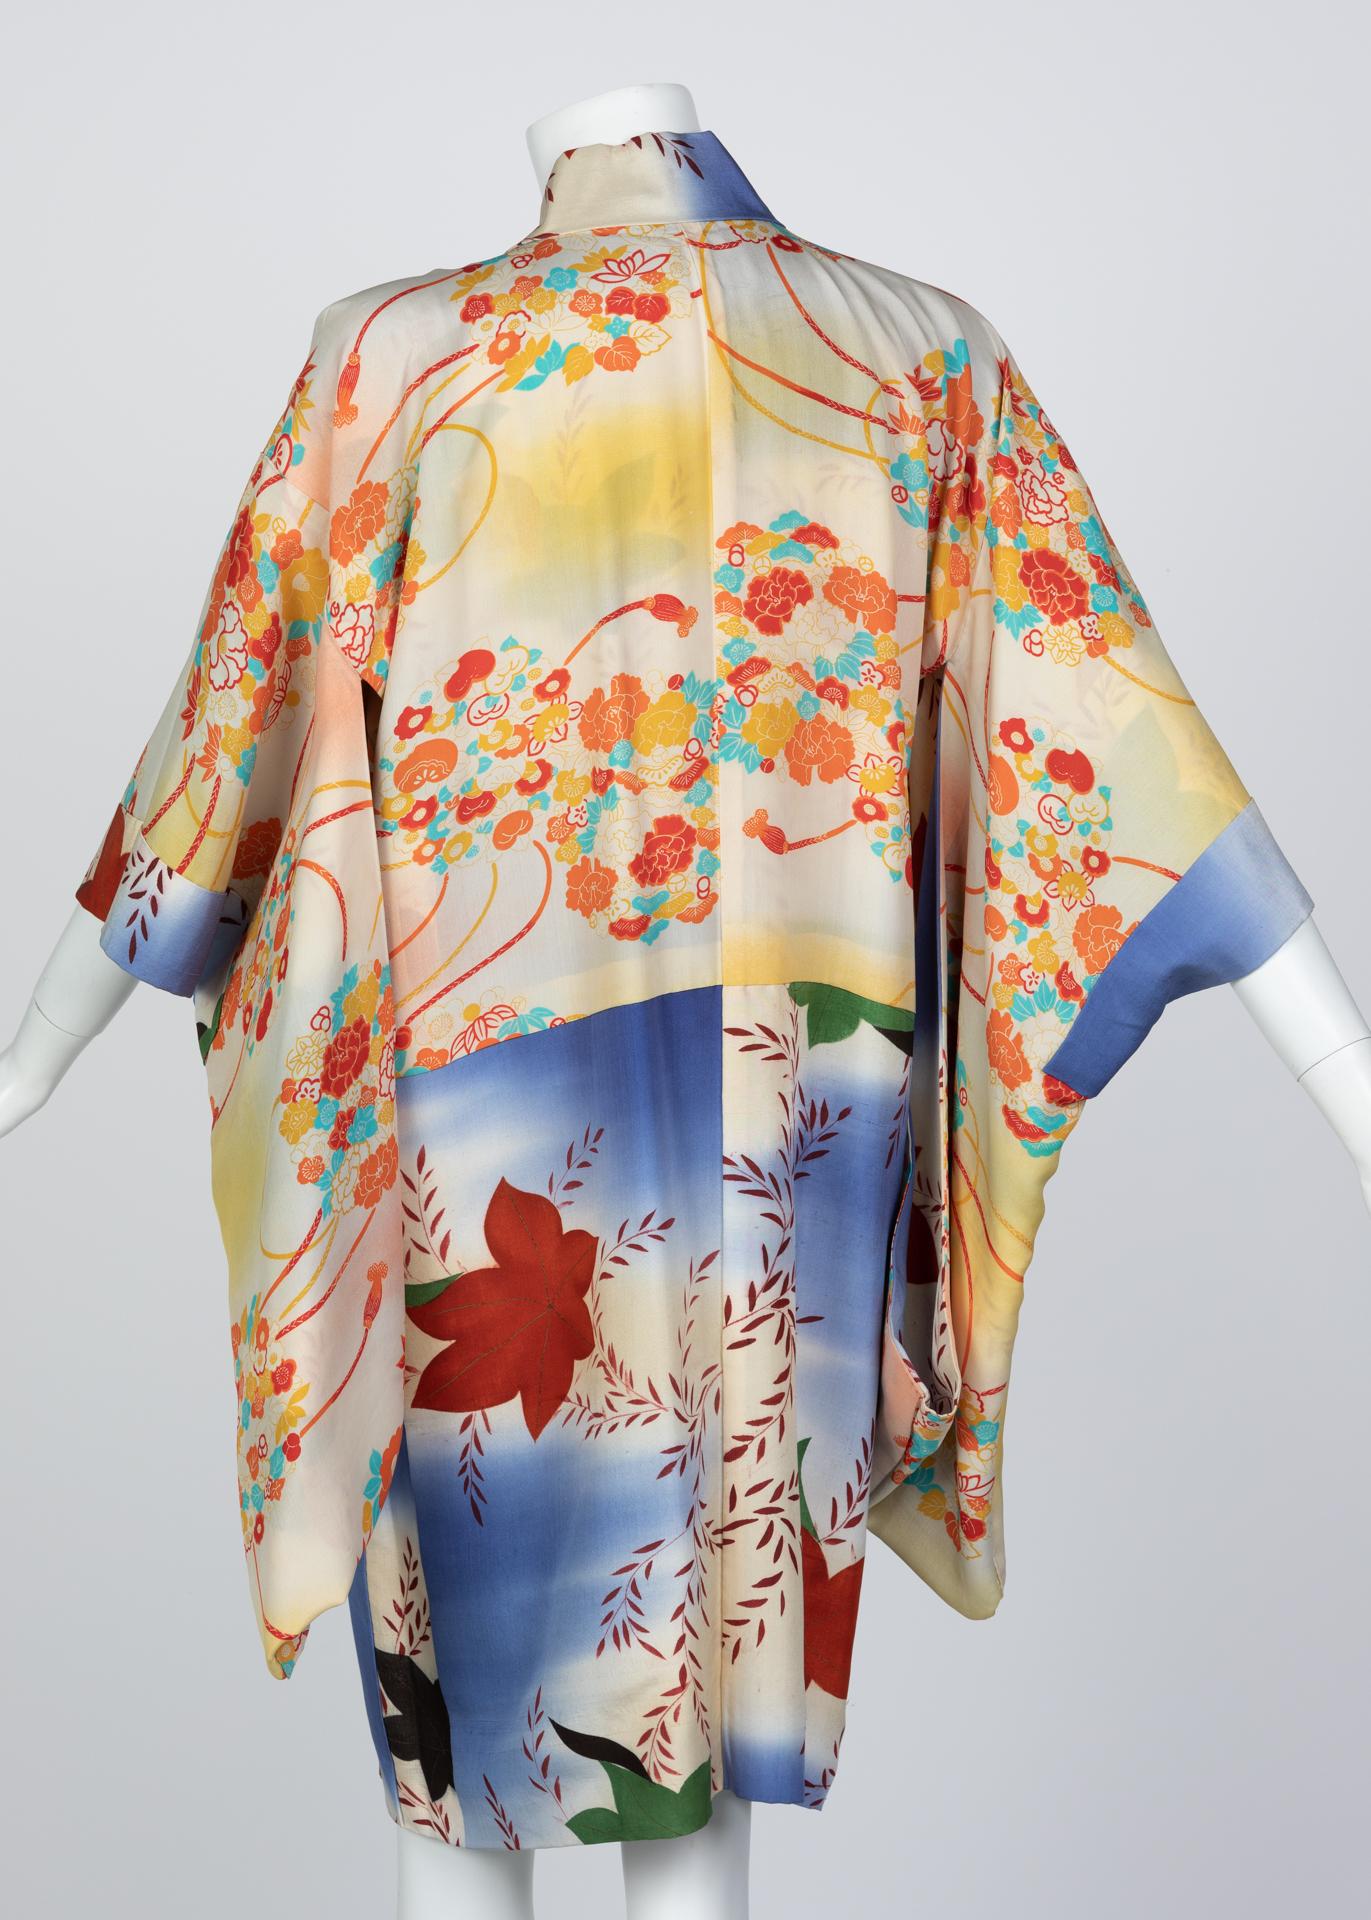 Le kimono est une robe traditionnelle respectée et très décorée du Japon. Ces robes ont été le centre d'inspiration de nombreux designers occidentaux et ont été modifiées au fil du temps pour plaire à un public moderne tout en conservant de nombreux